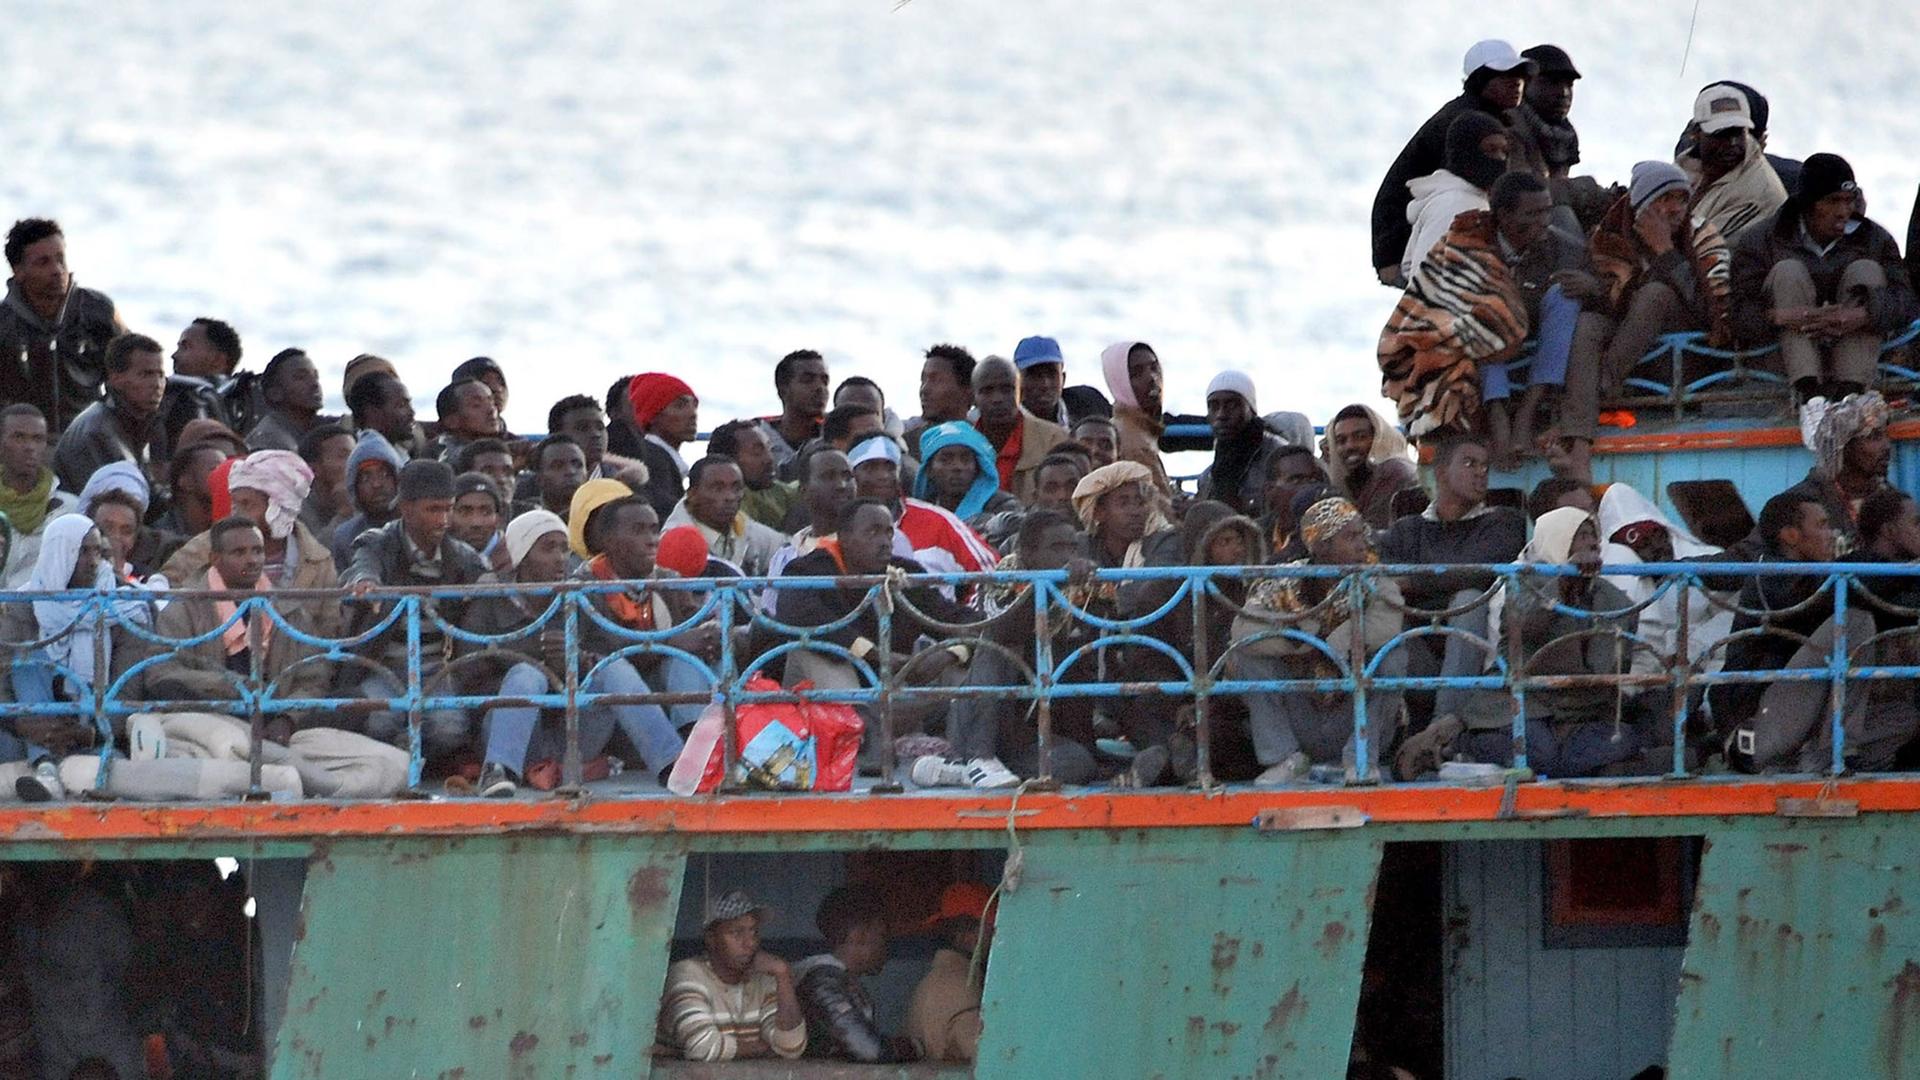 Ein überfülltes Boot mit Flüchtlingen aus Afrika schwimmt vor der italienischen Insel Lampedusa.